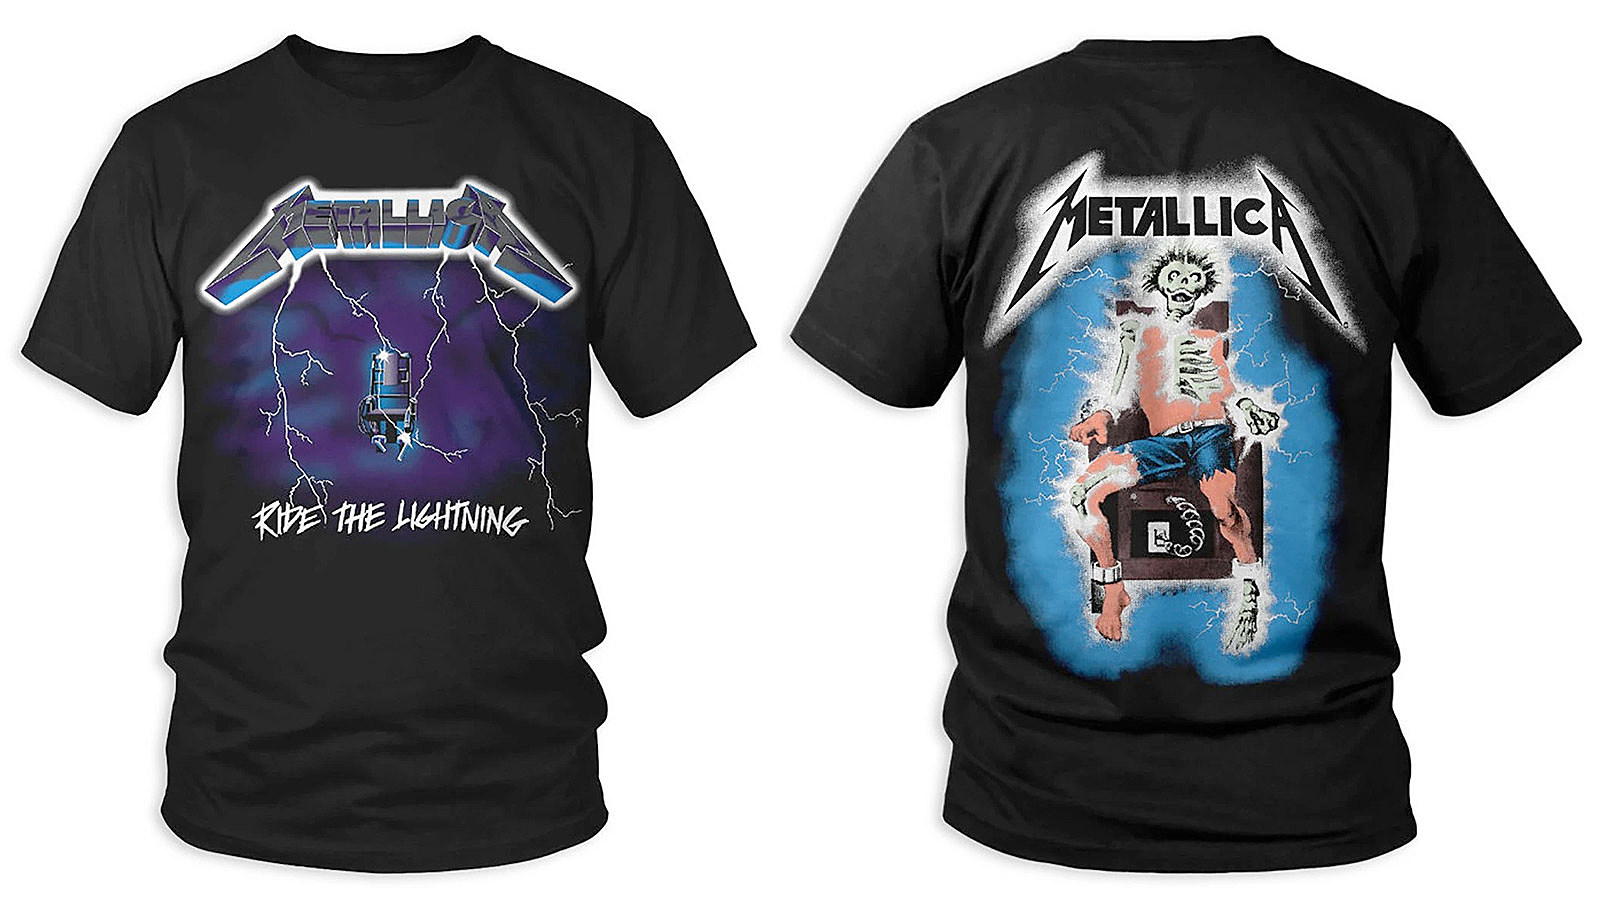 Metallica 'Ride the Lightning' t-shirt